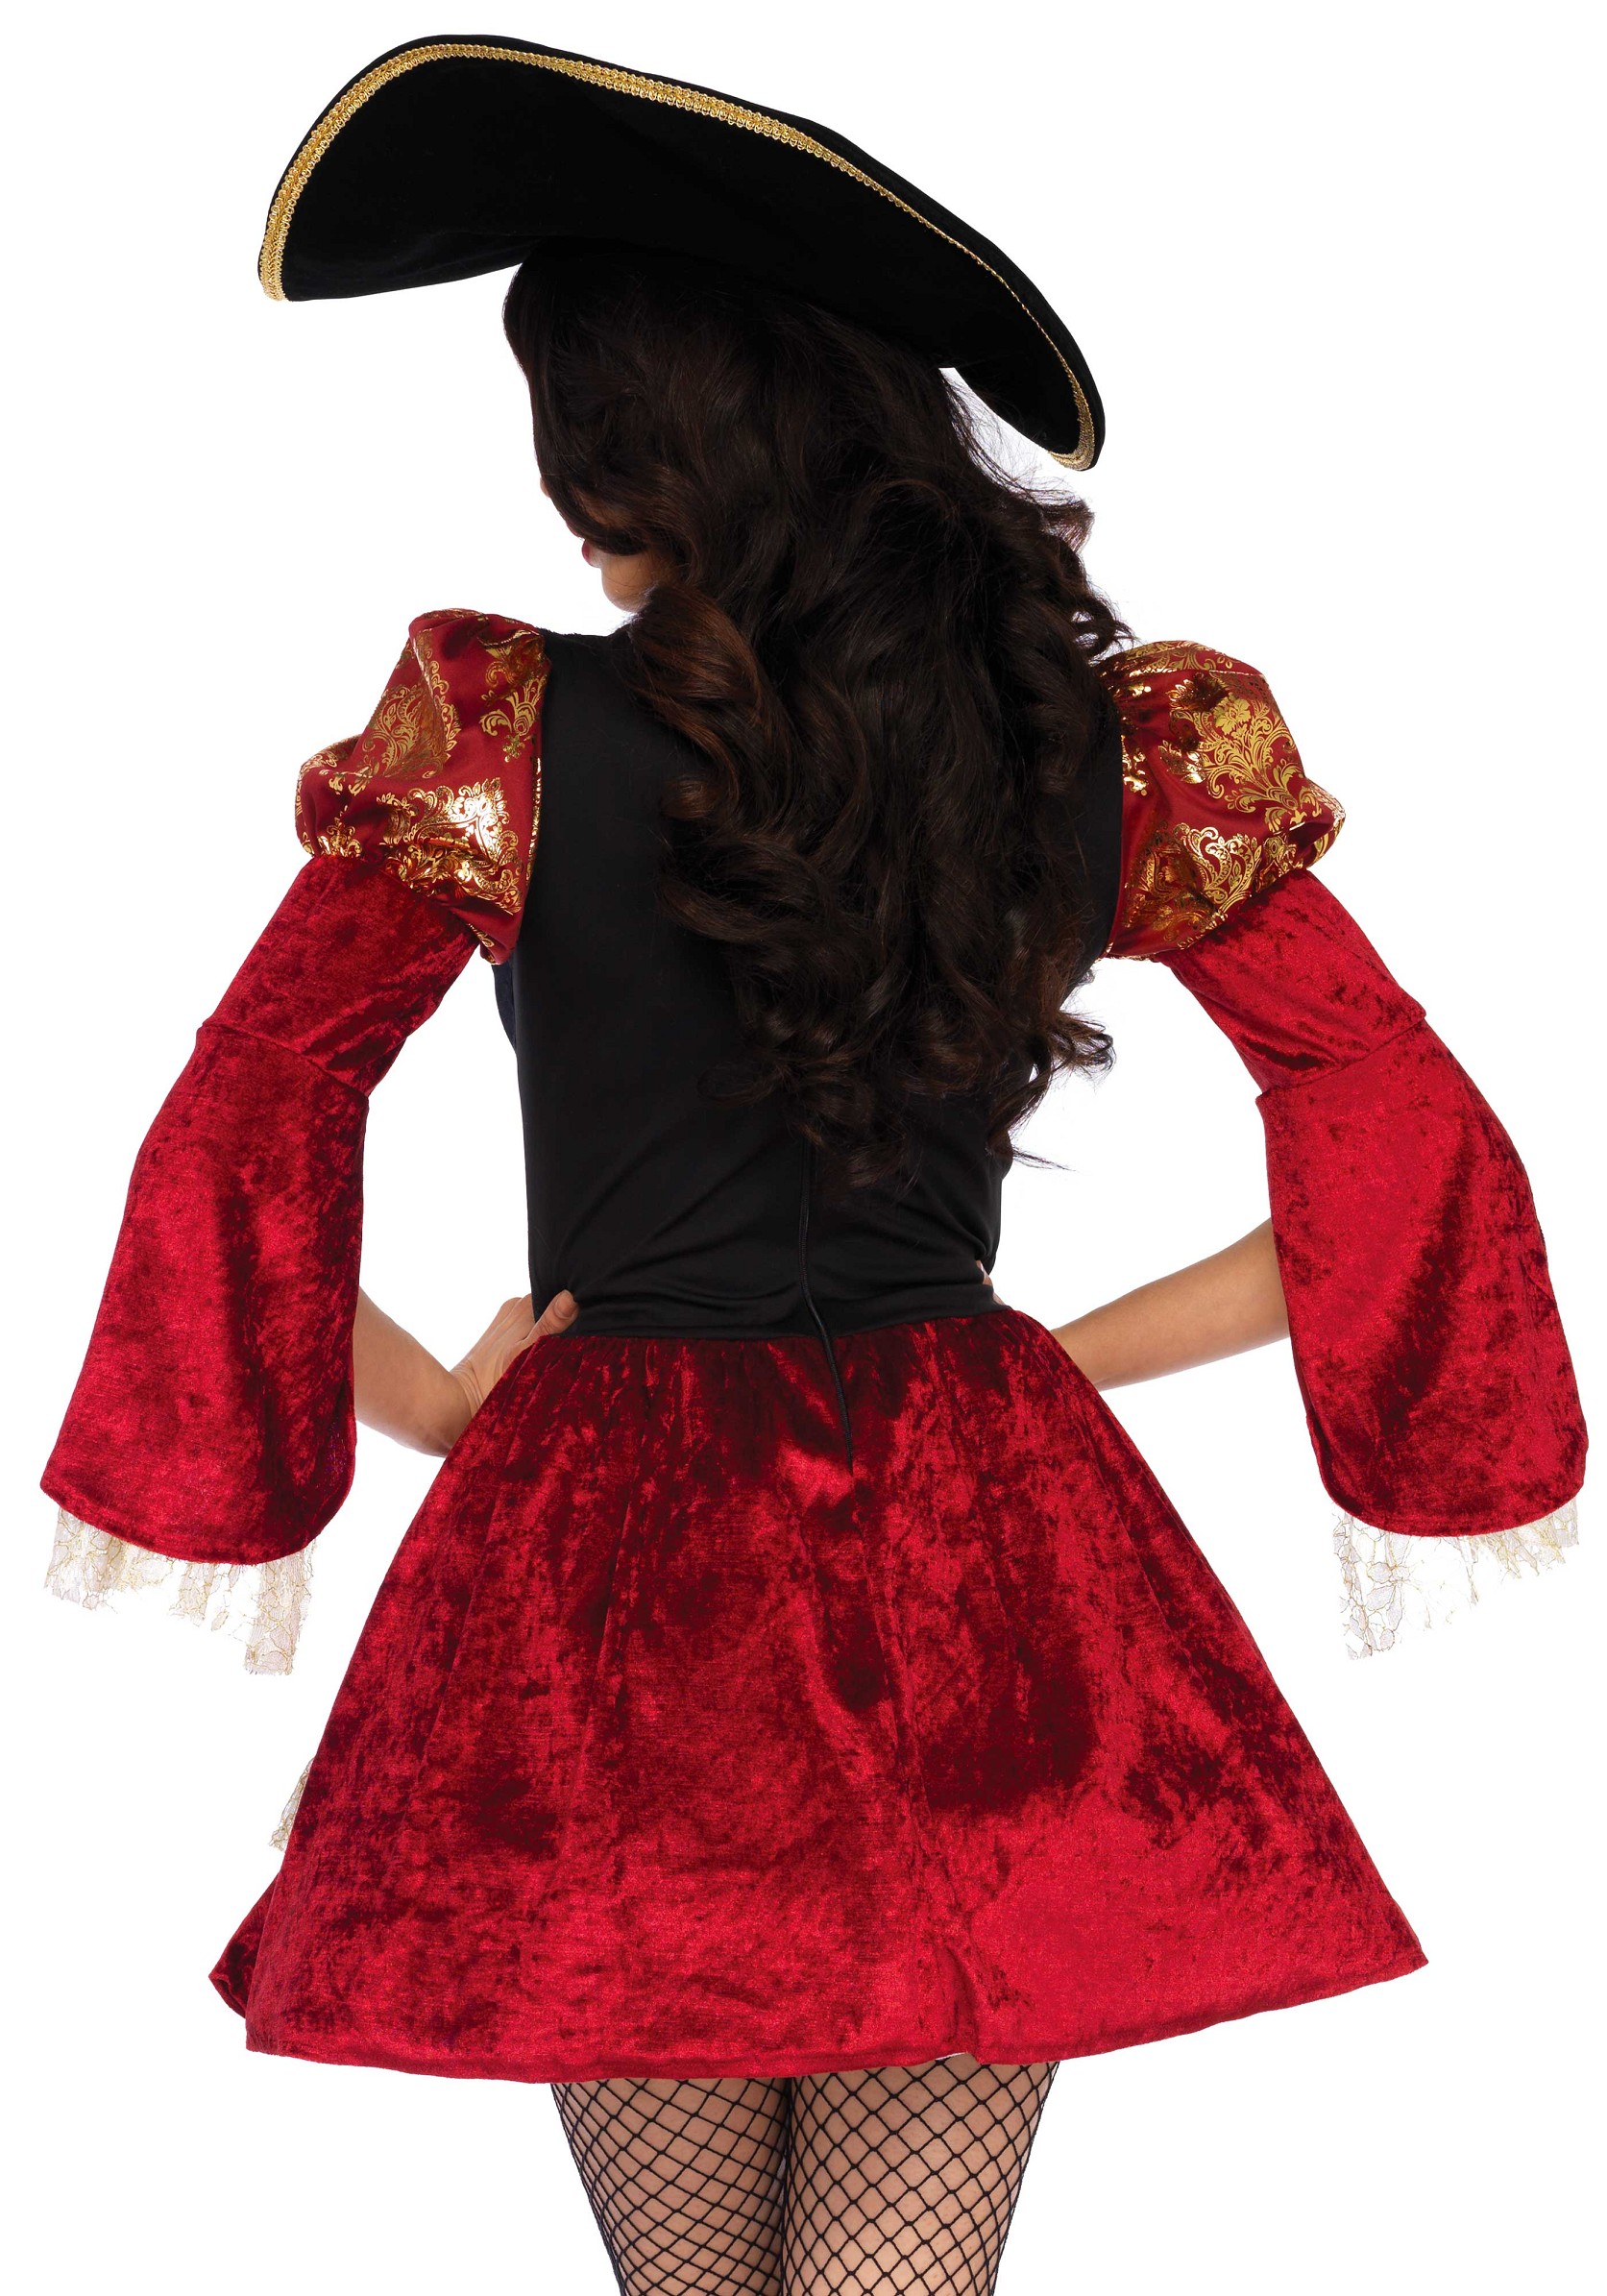 Nieuw Sexy Piraten jurk bestaande uit warm rode fluwelen jurk met DY-95